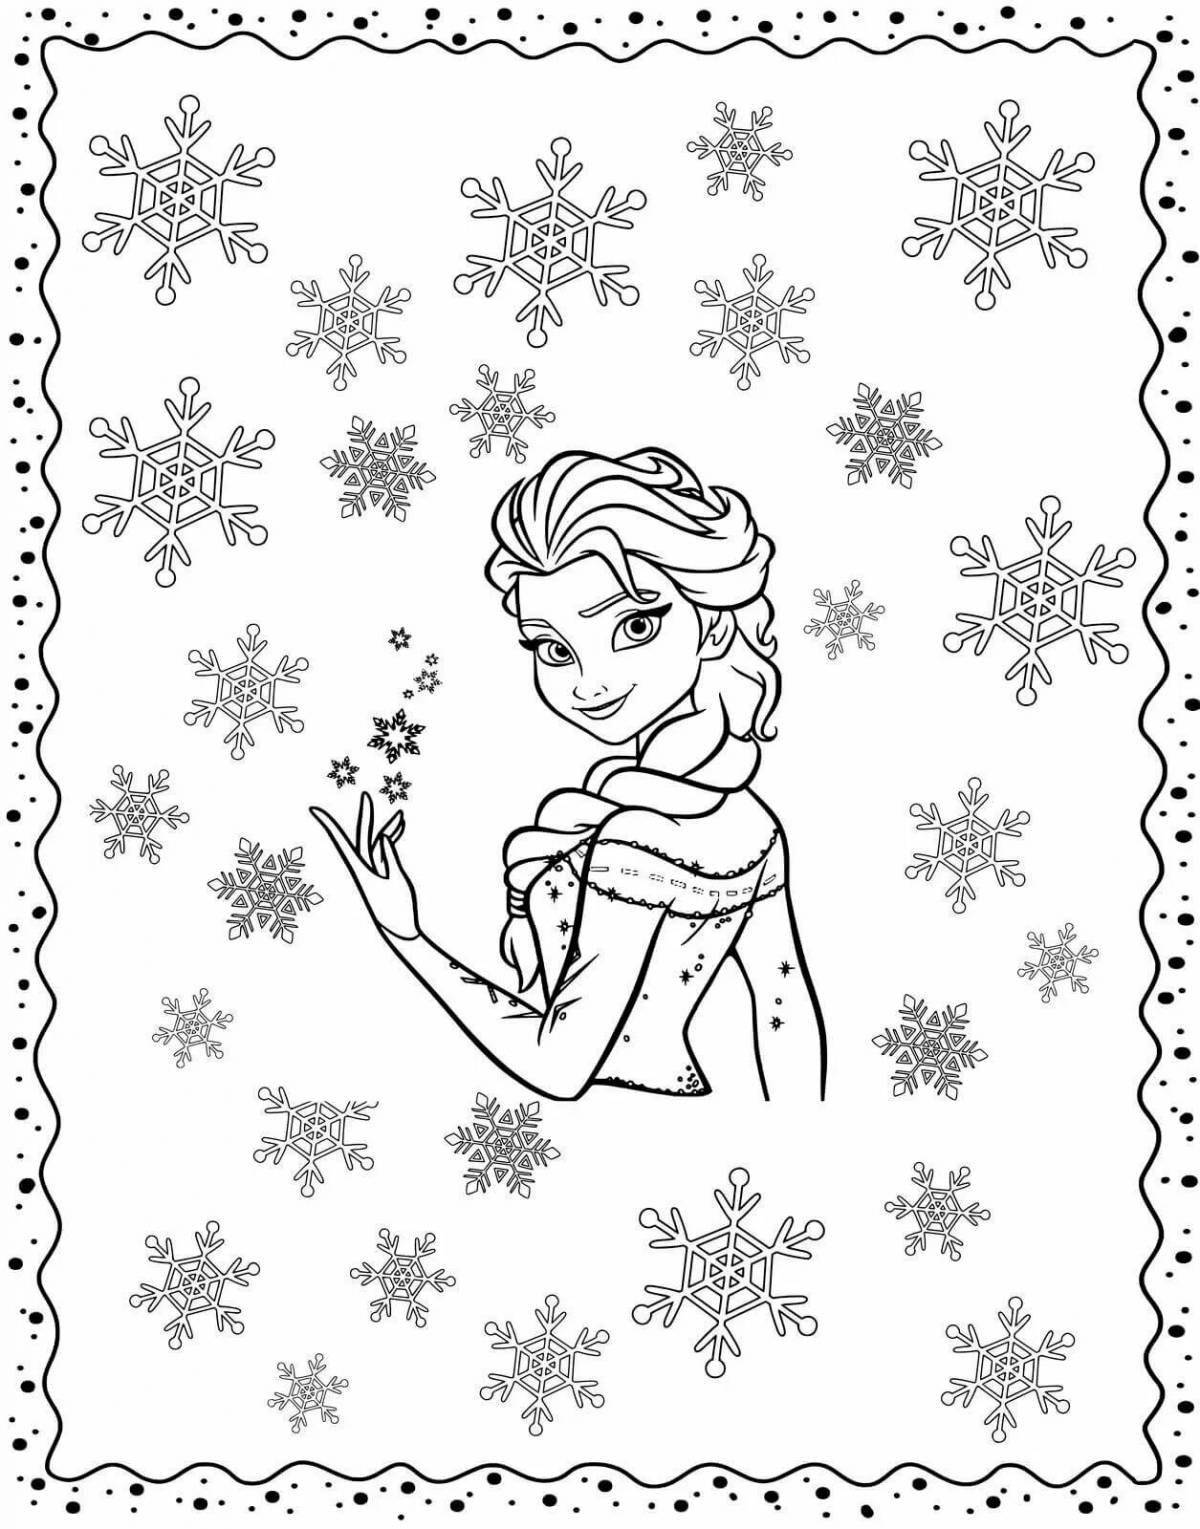 Adorable winter portrait coloring page